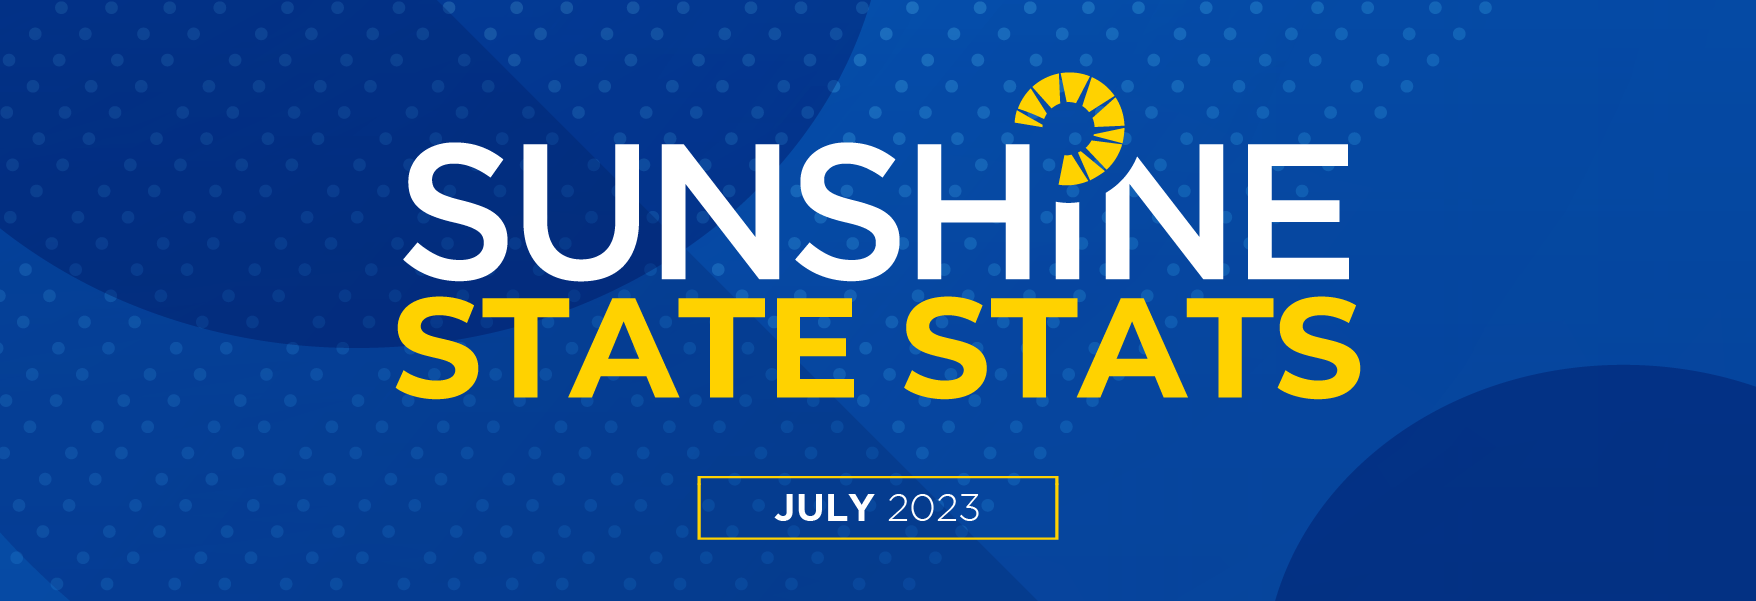 July 2023 Sunshine State Stats